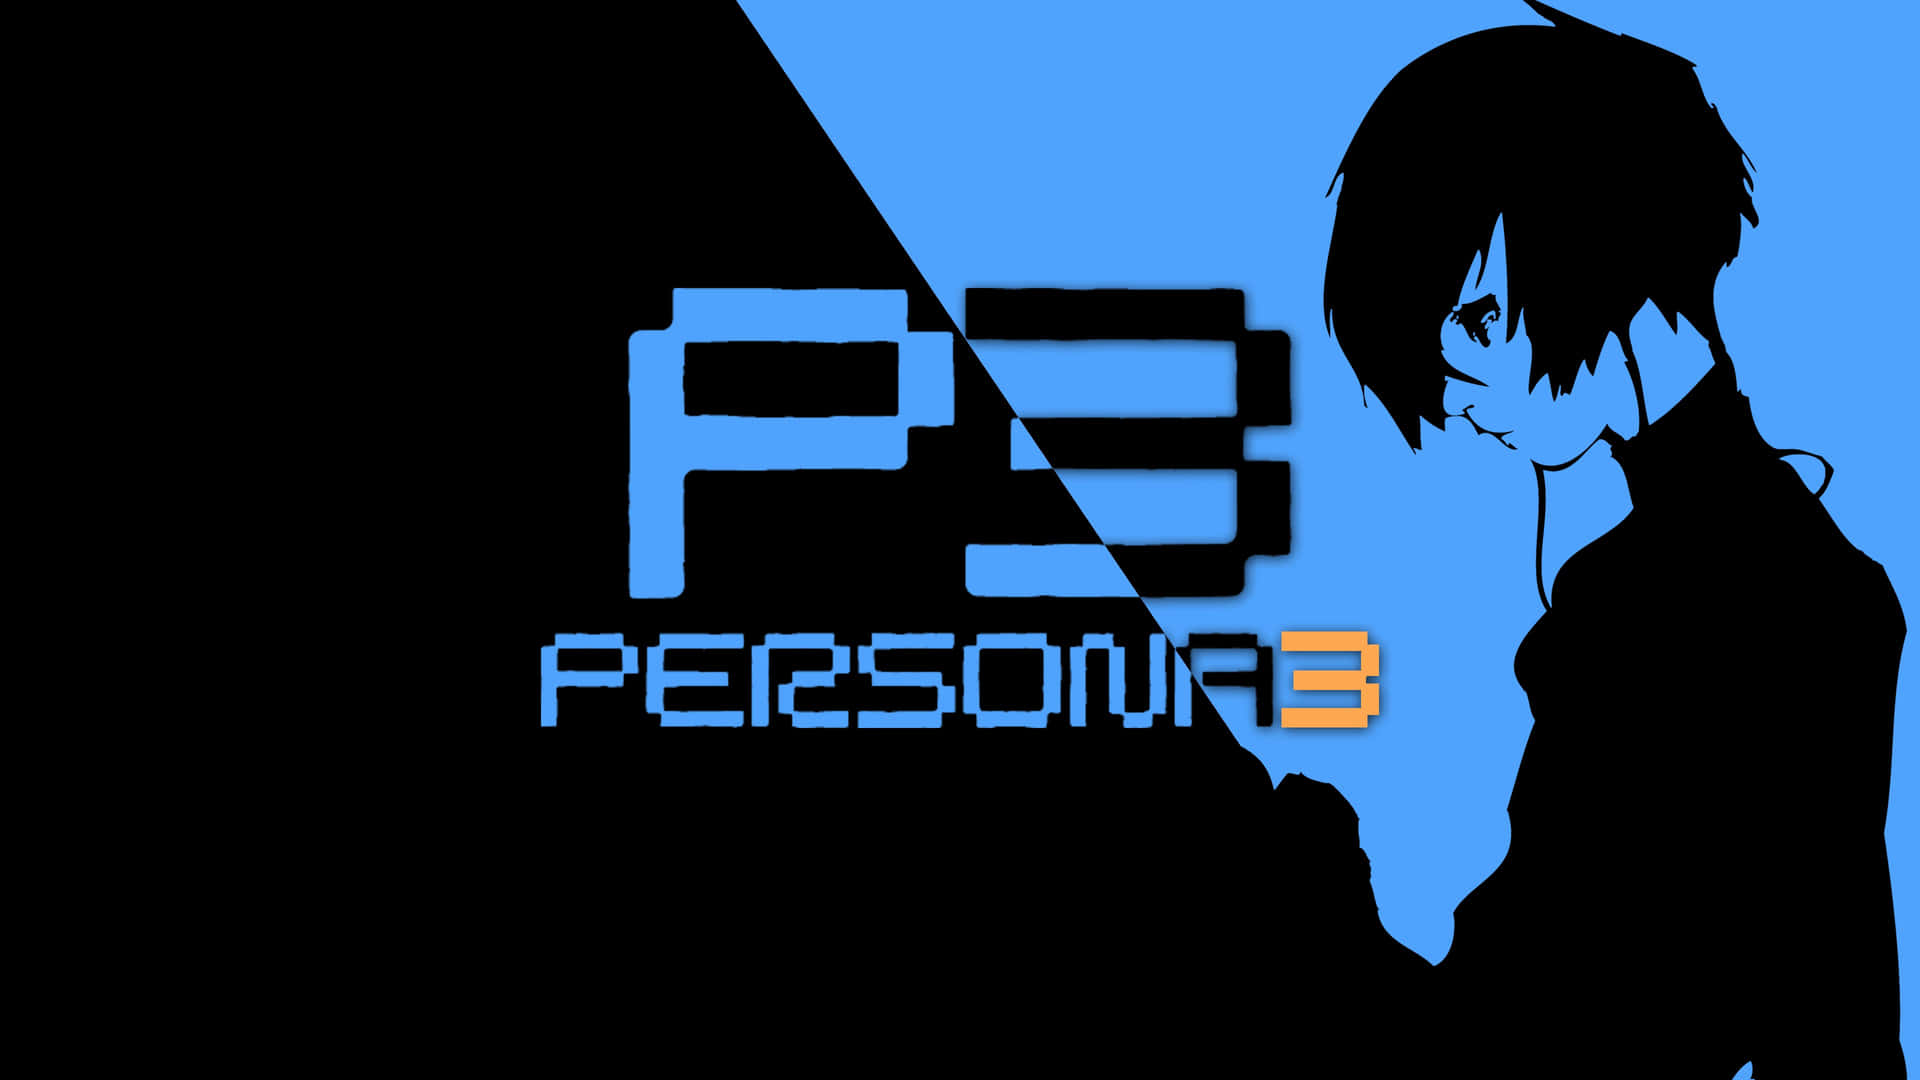 Schwarzesund Blaues Persona 3 Bild